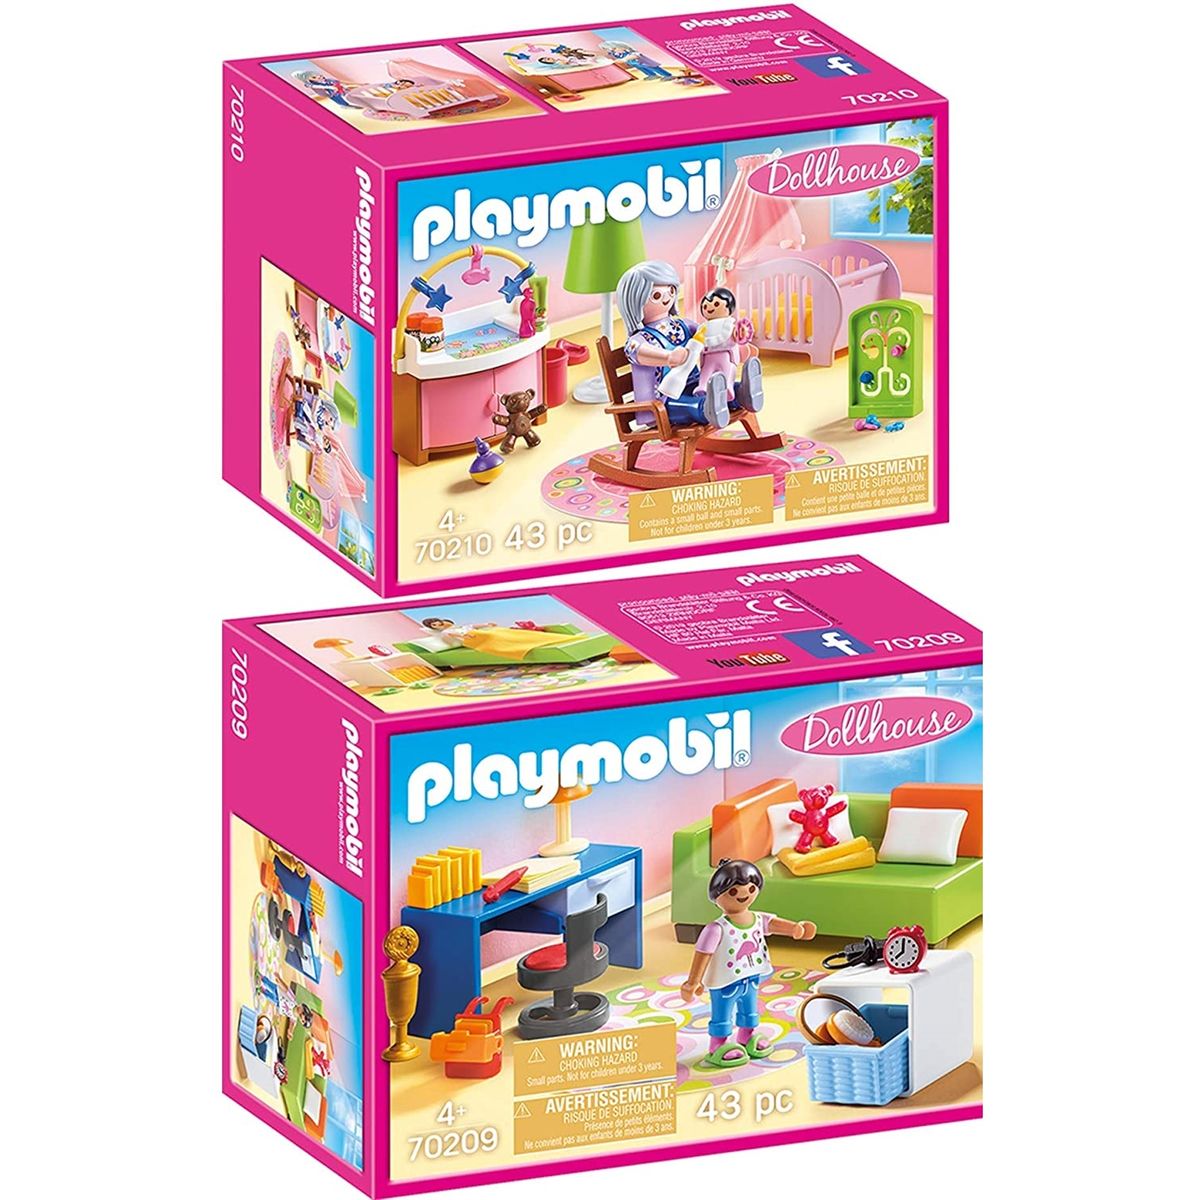 Playmobil 70988 chambre d'adolescent- city life - la maison moderne -  aménagement pièces de la maison Playmobil